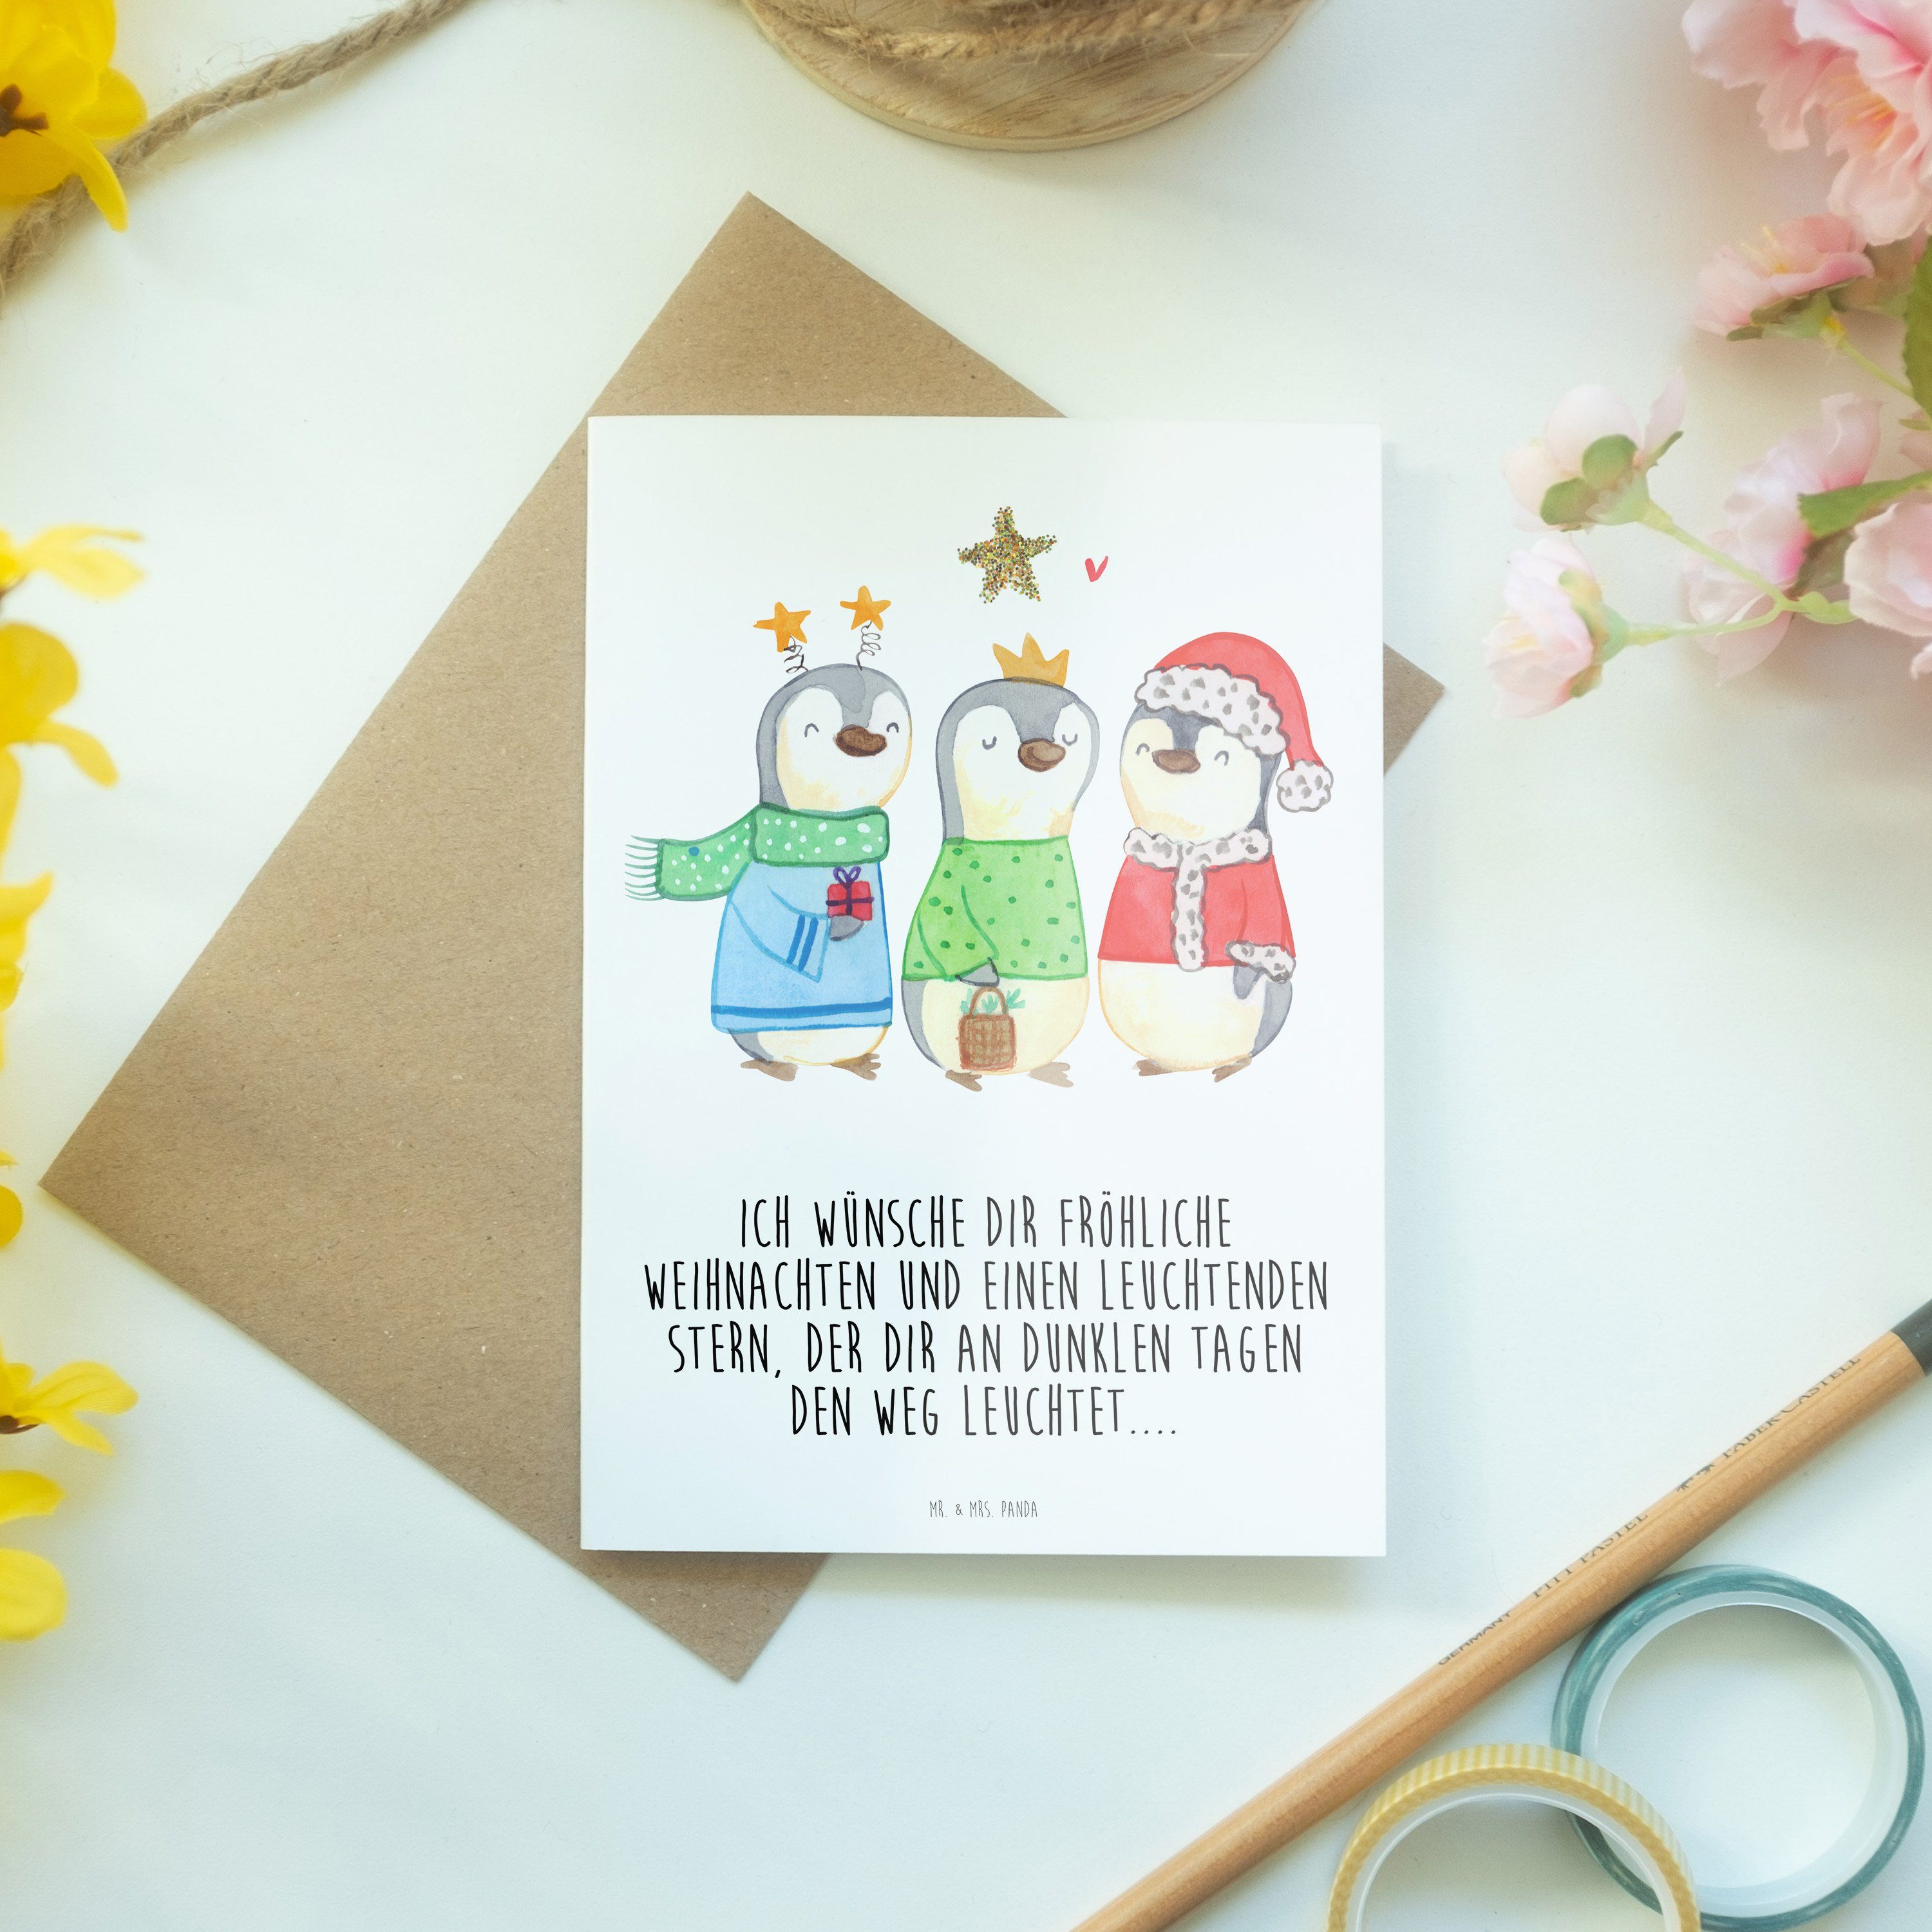 Mr. & Mrs. Panda Grußkarte - - Könige Winterzeit Heilige Weiß Geb Weihnachtsdeko, drei Geschenk